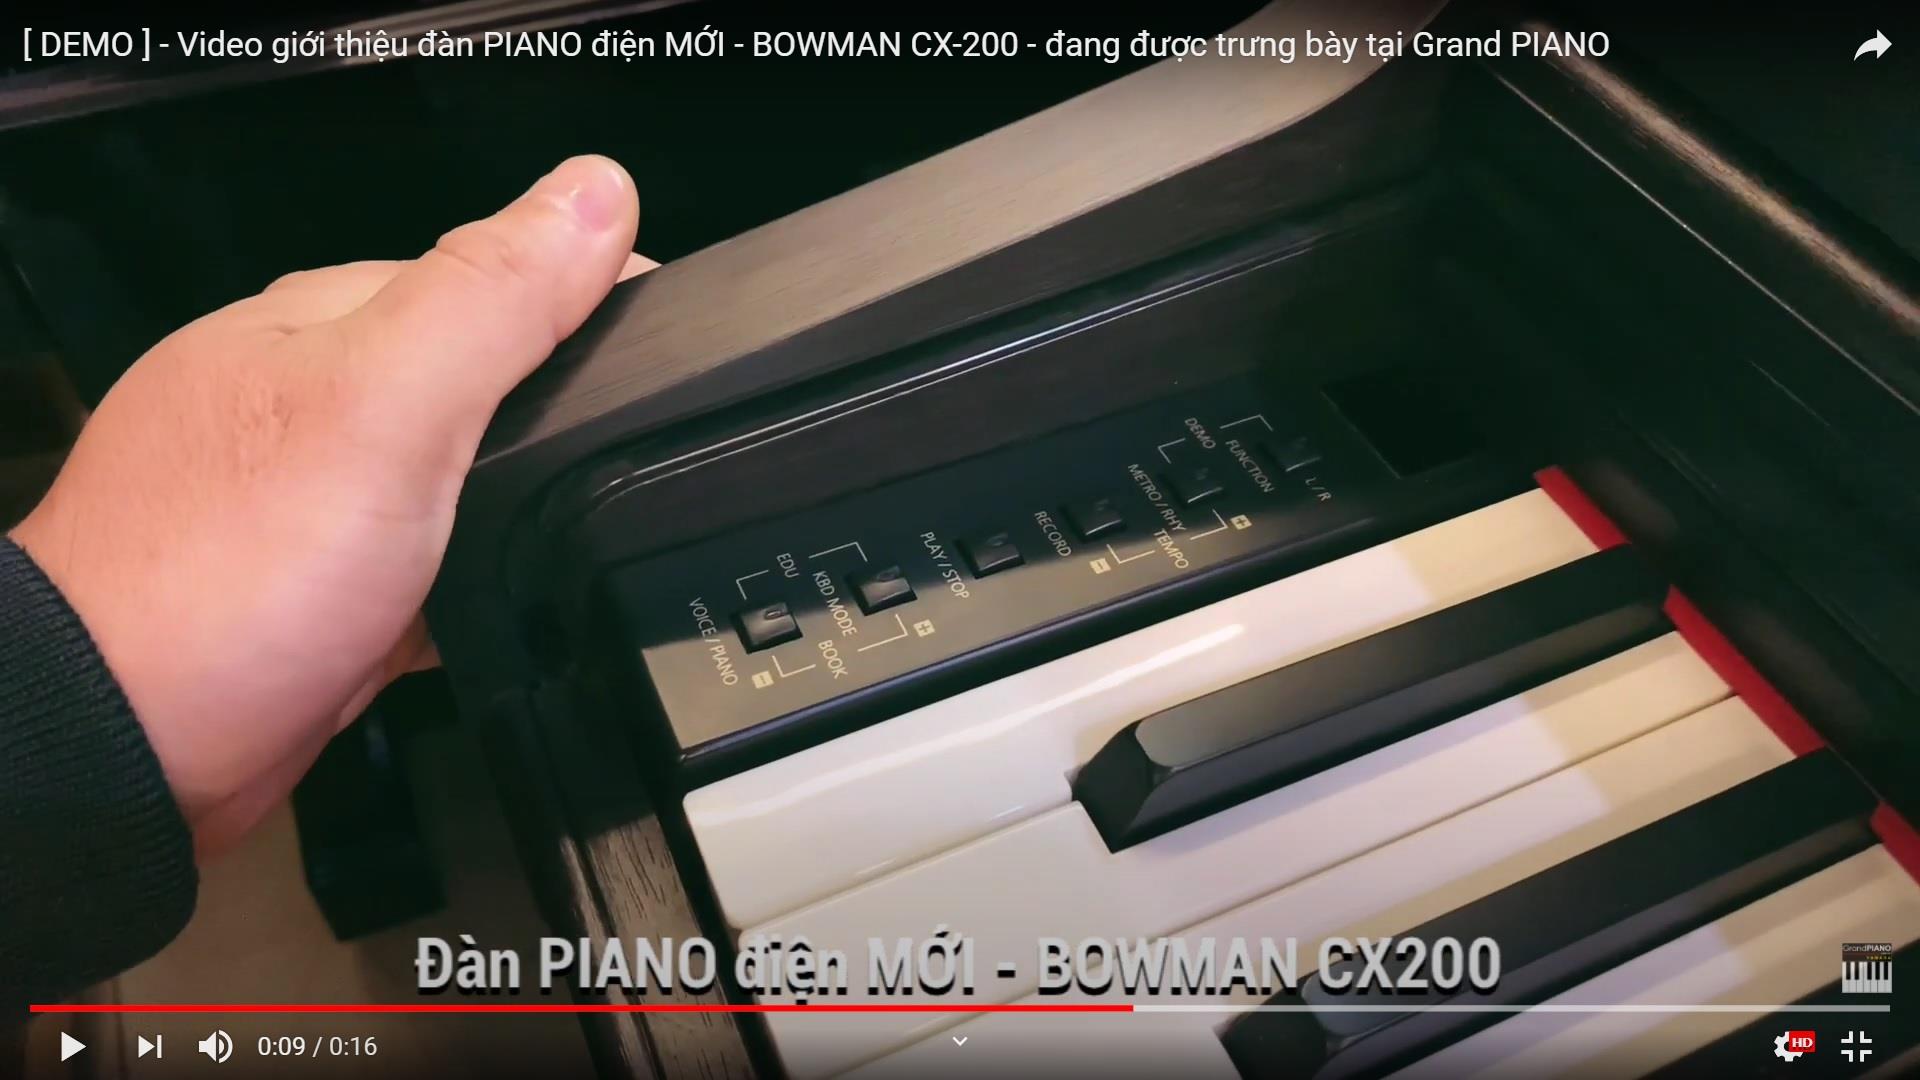 [ DEMO ] - Video giới thiệu đàn PIANO điện MỚI - BOWMAN CX-200 - đang được trưng bày tại Grand PIANO